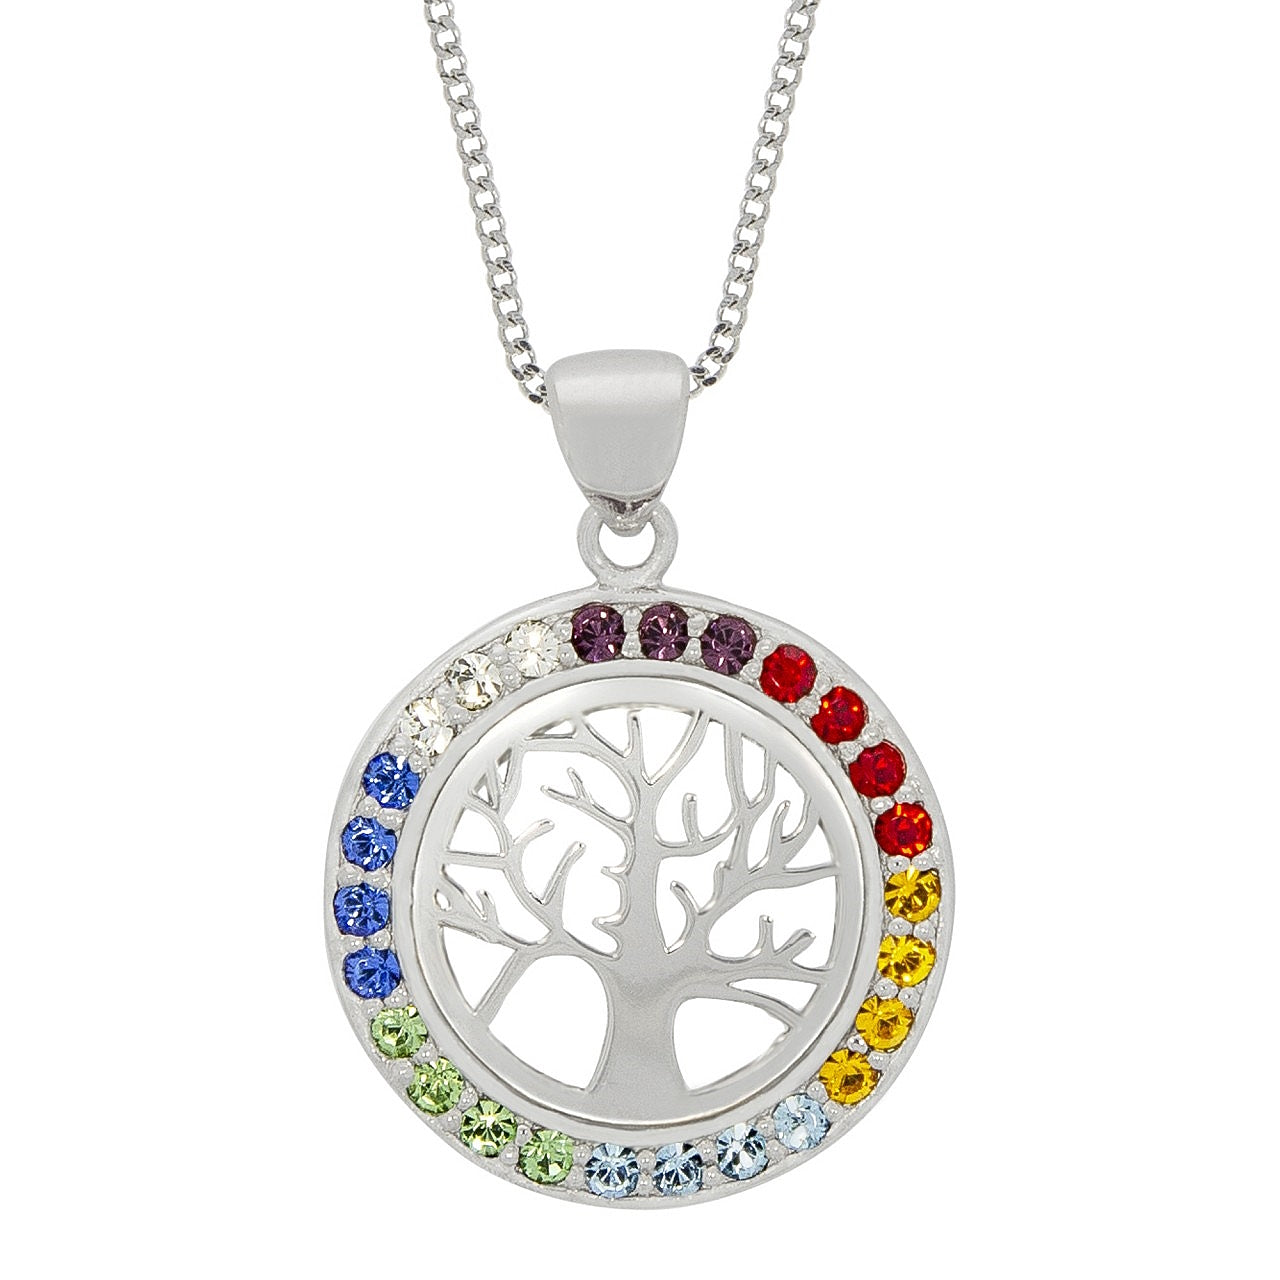 Halskette Rhodiniert - Farbenfroher Kristall Lebensbaum